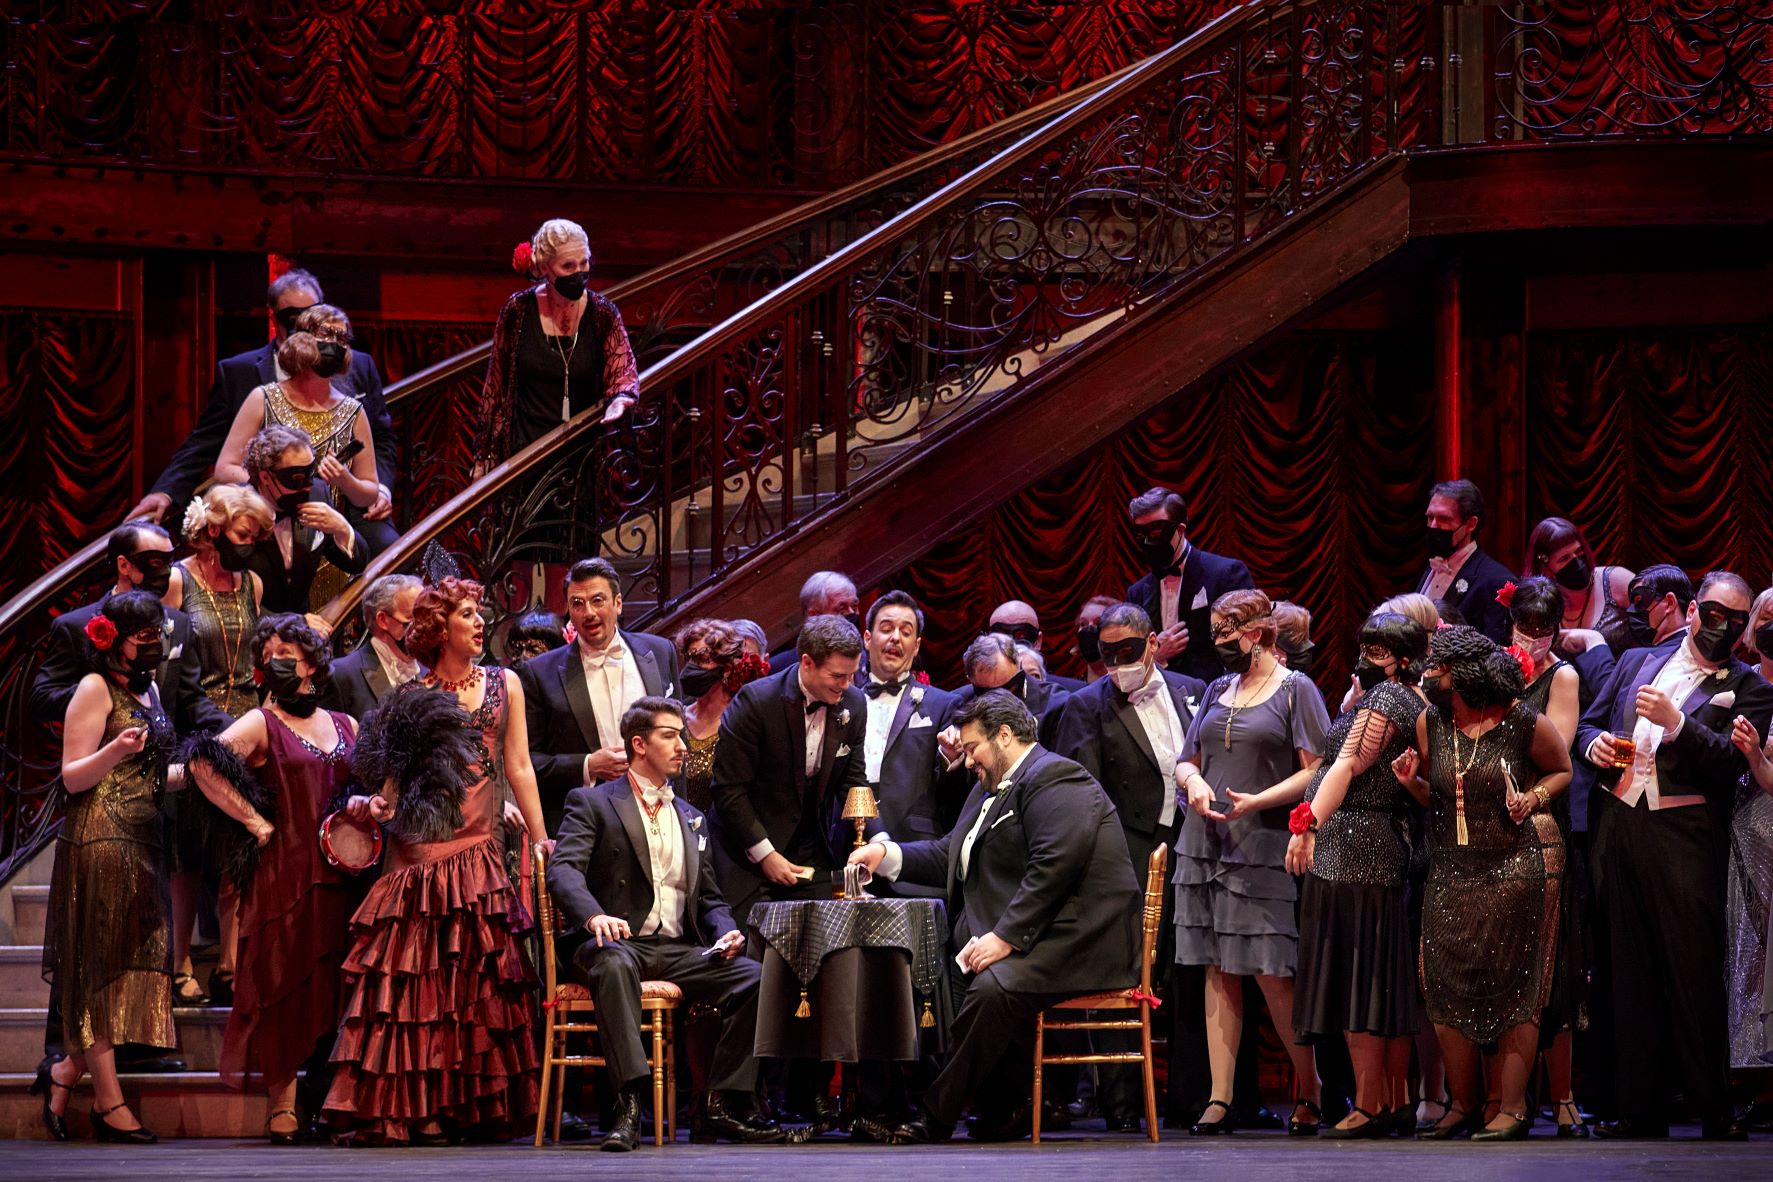 LA TRAVIATACalgary Opera sets La traviata in the Roaring ’20s